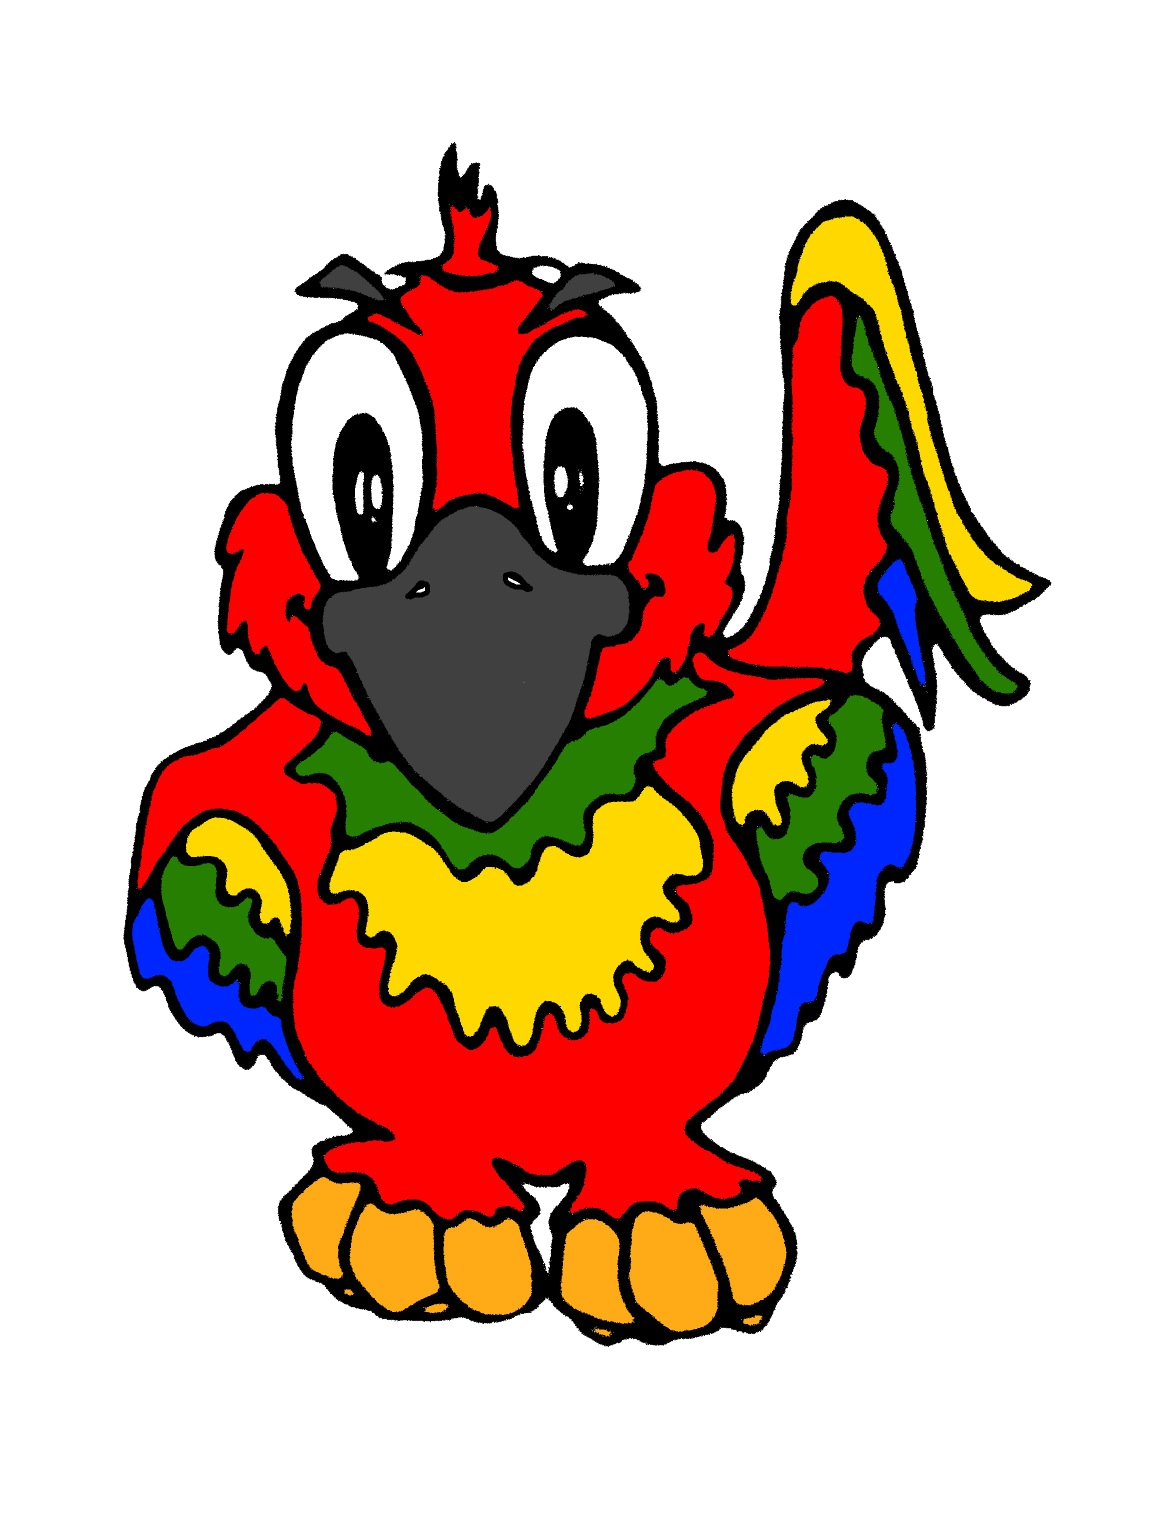 Cute Parrot Transparent Image PNG Image